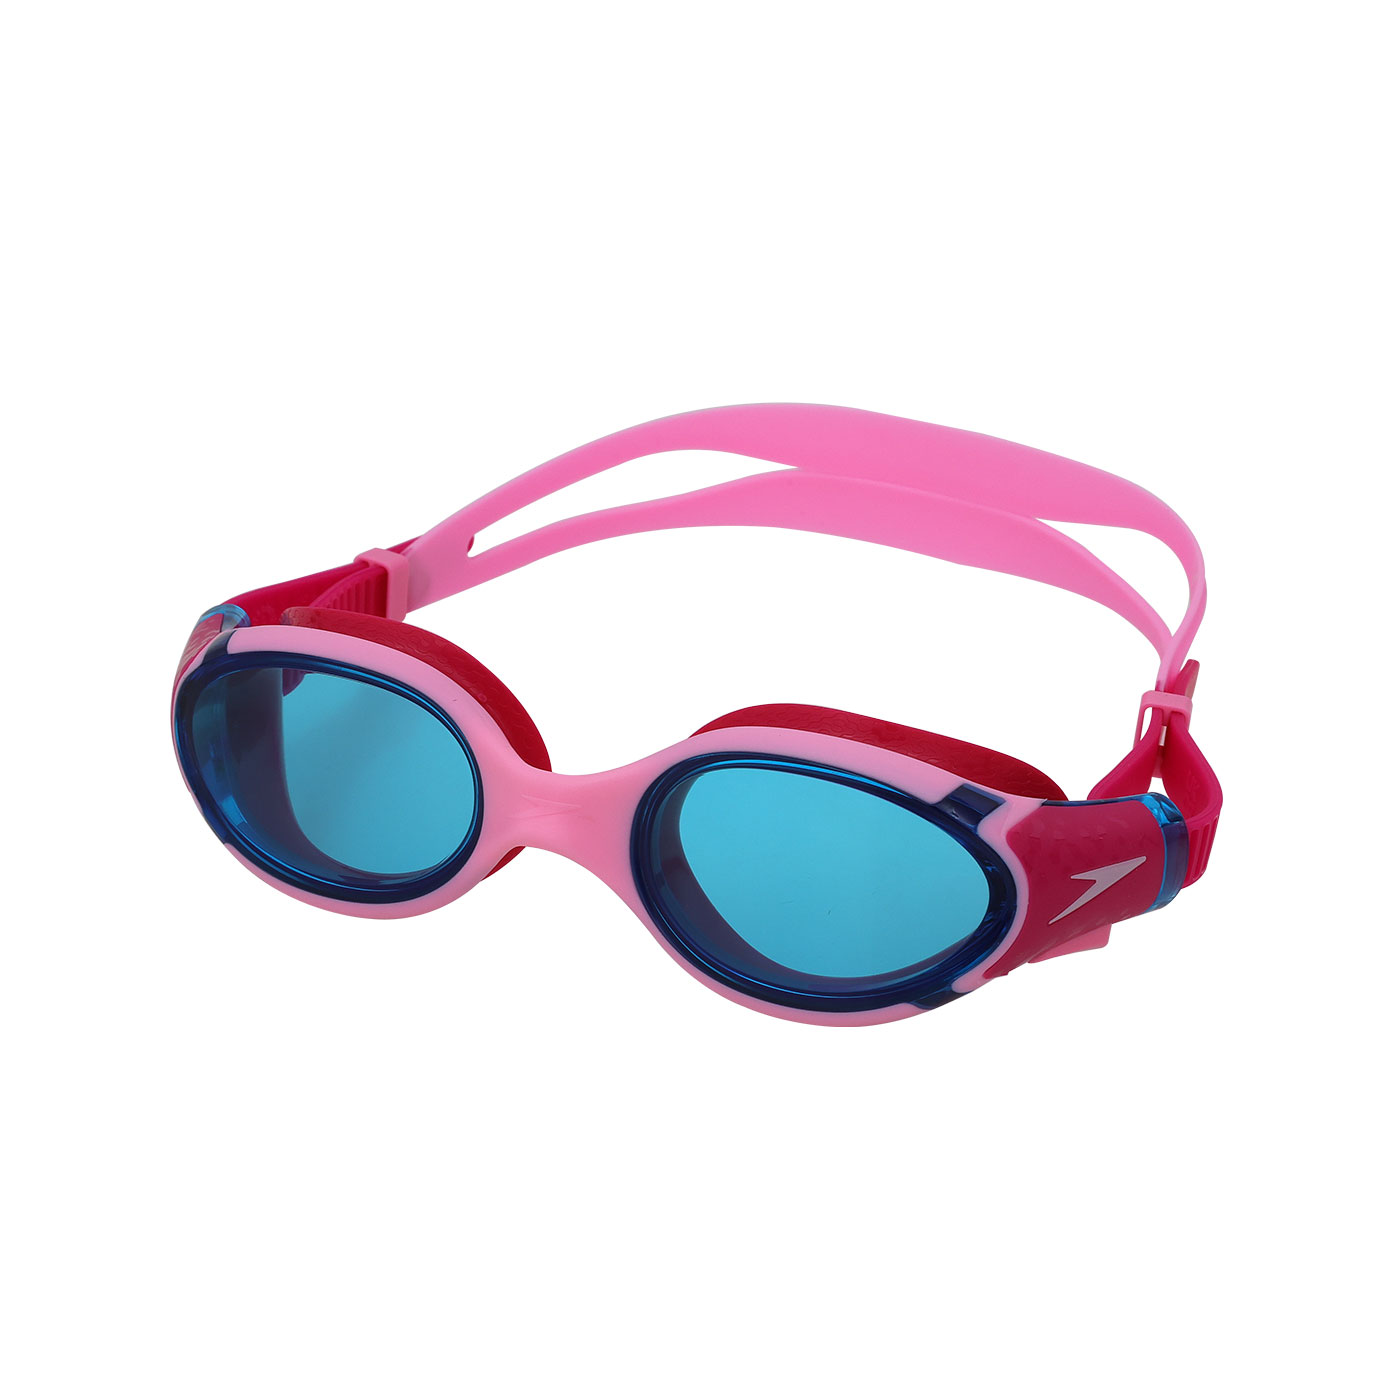 SPEEDO 兒童運動泳鏡Biofuse2.0  SD800336315945 - 粉紅藍桃紅